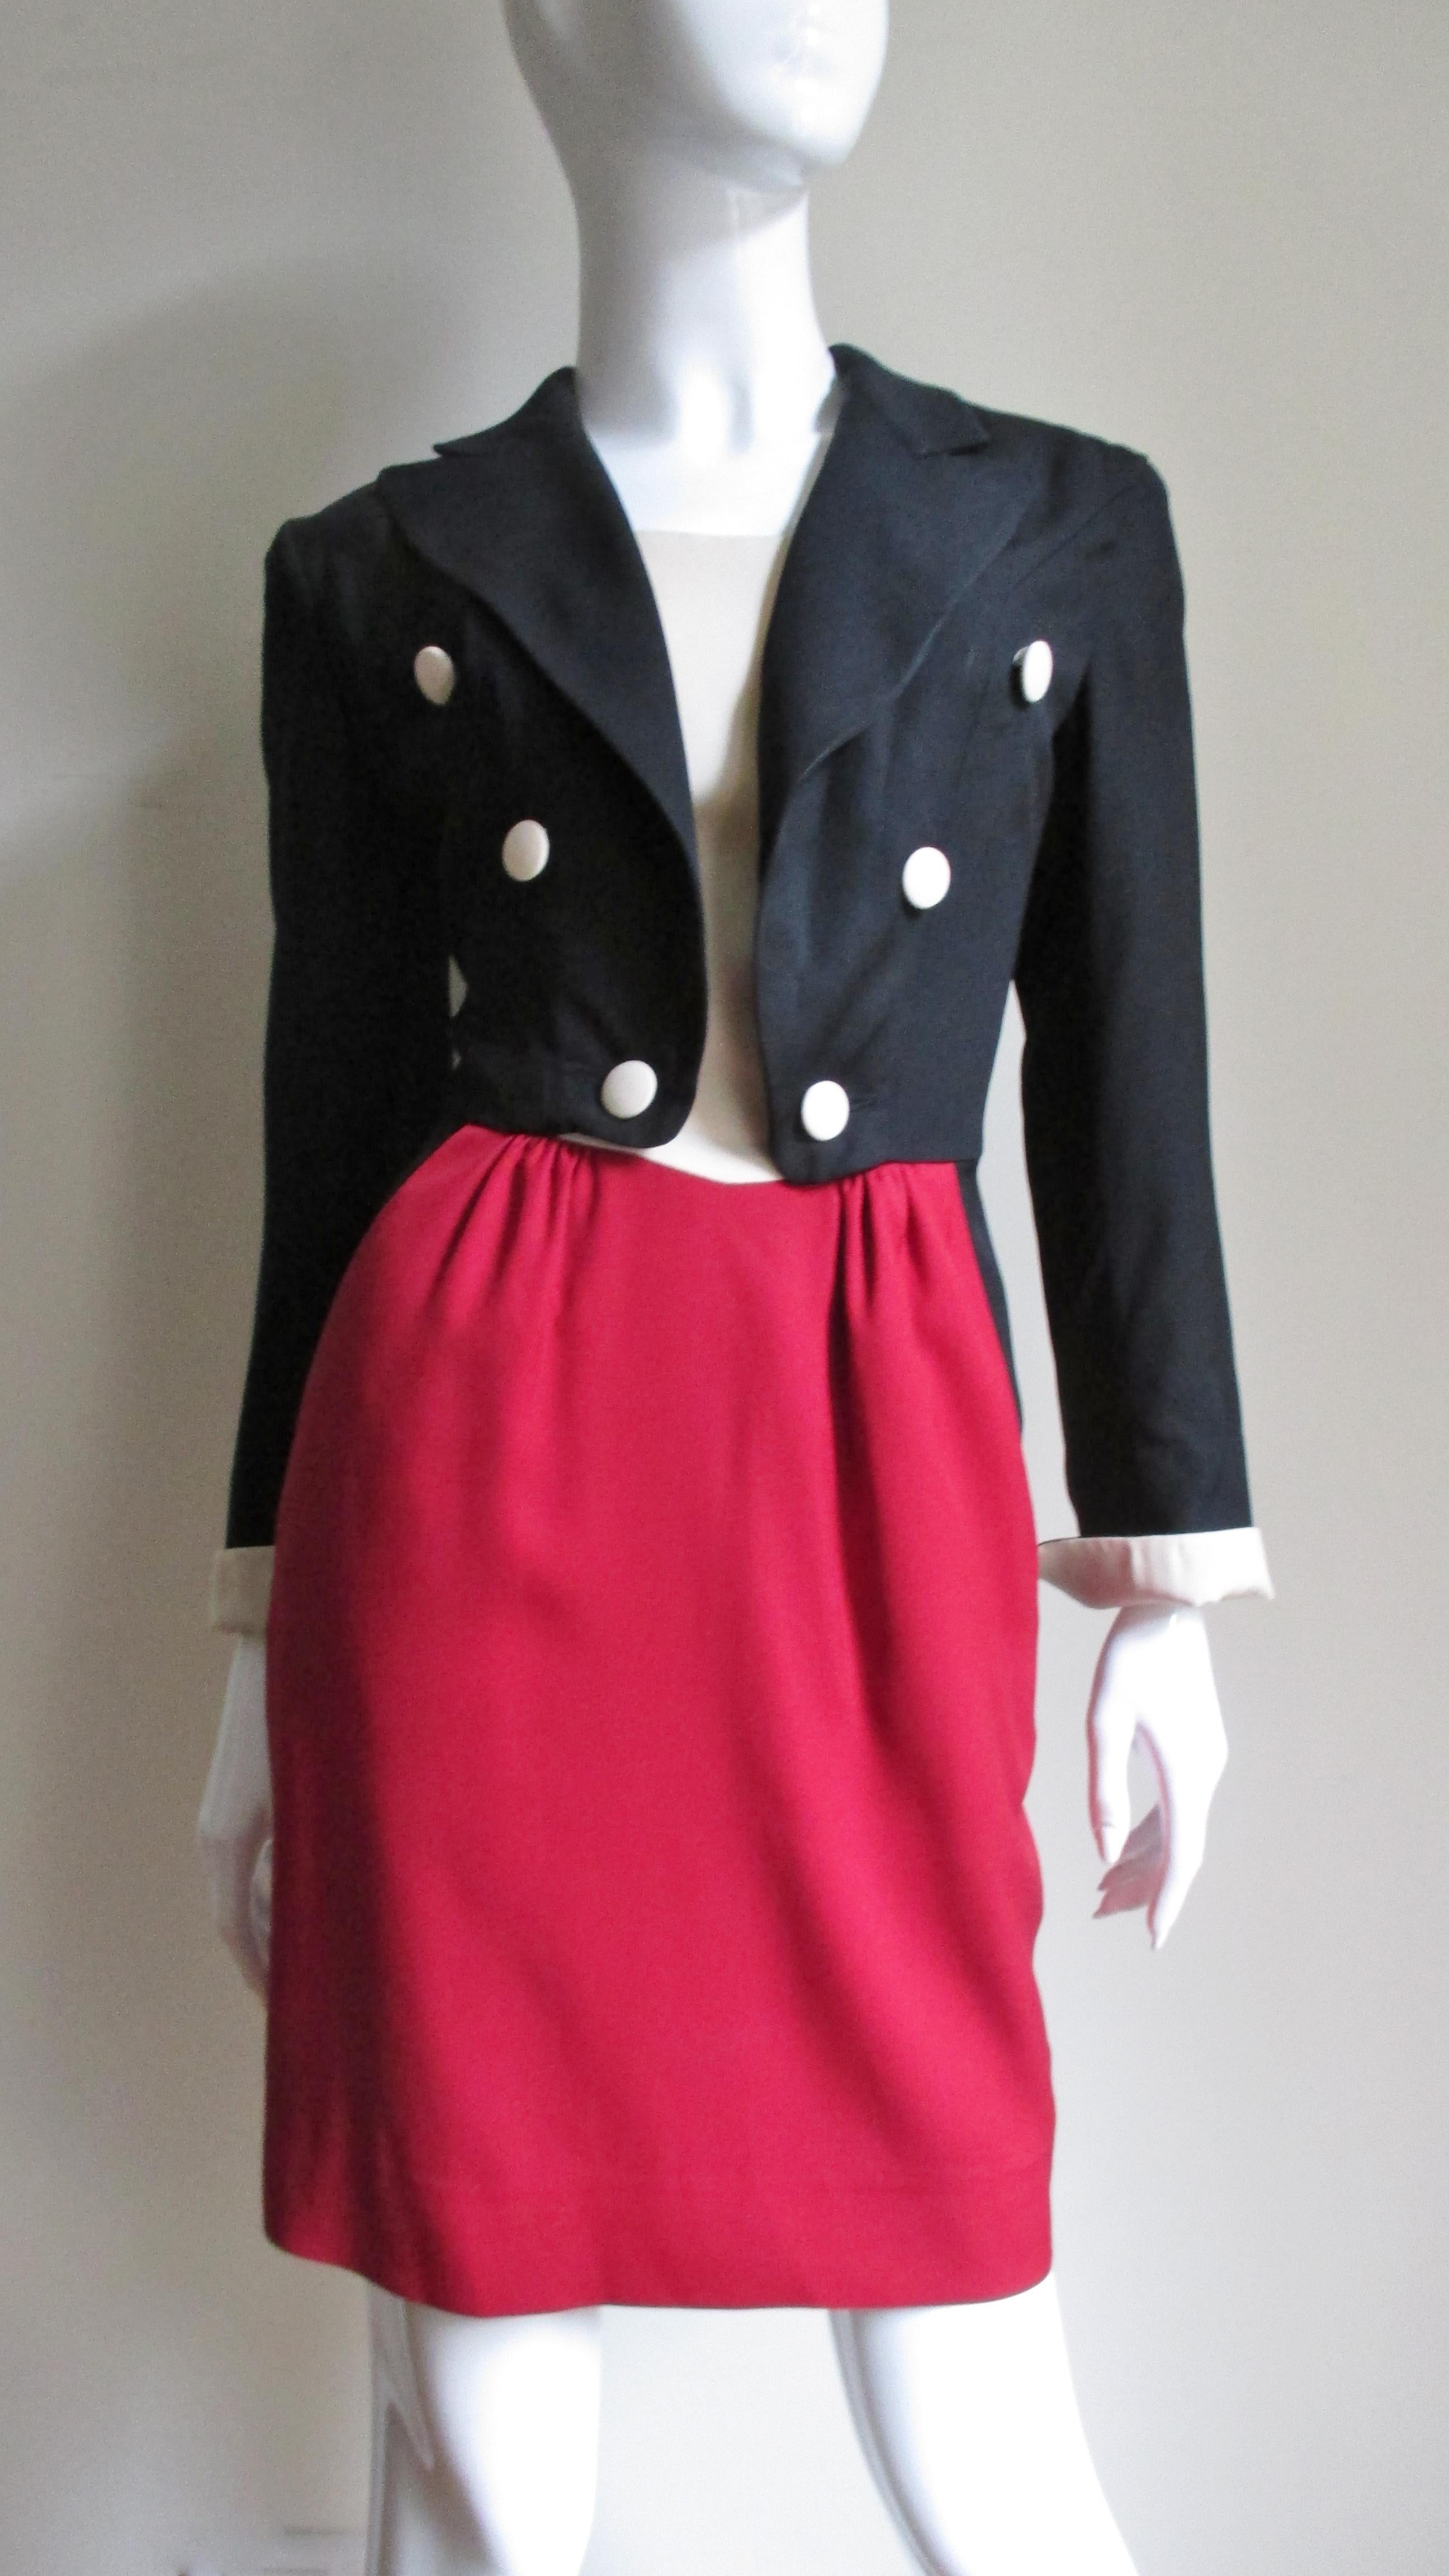 Une robe fantaisiste de Moschino en noir, rouge et blanc cassé. Le corsage se présente sous la forme d'une veste noire à double poitrine, avec des revers à pointe et des manches longues avec des poignets pliés assortis au haut blanc cassé qui